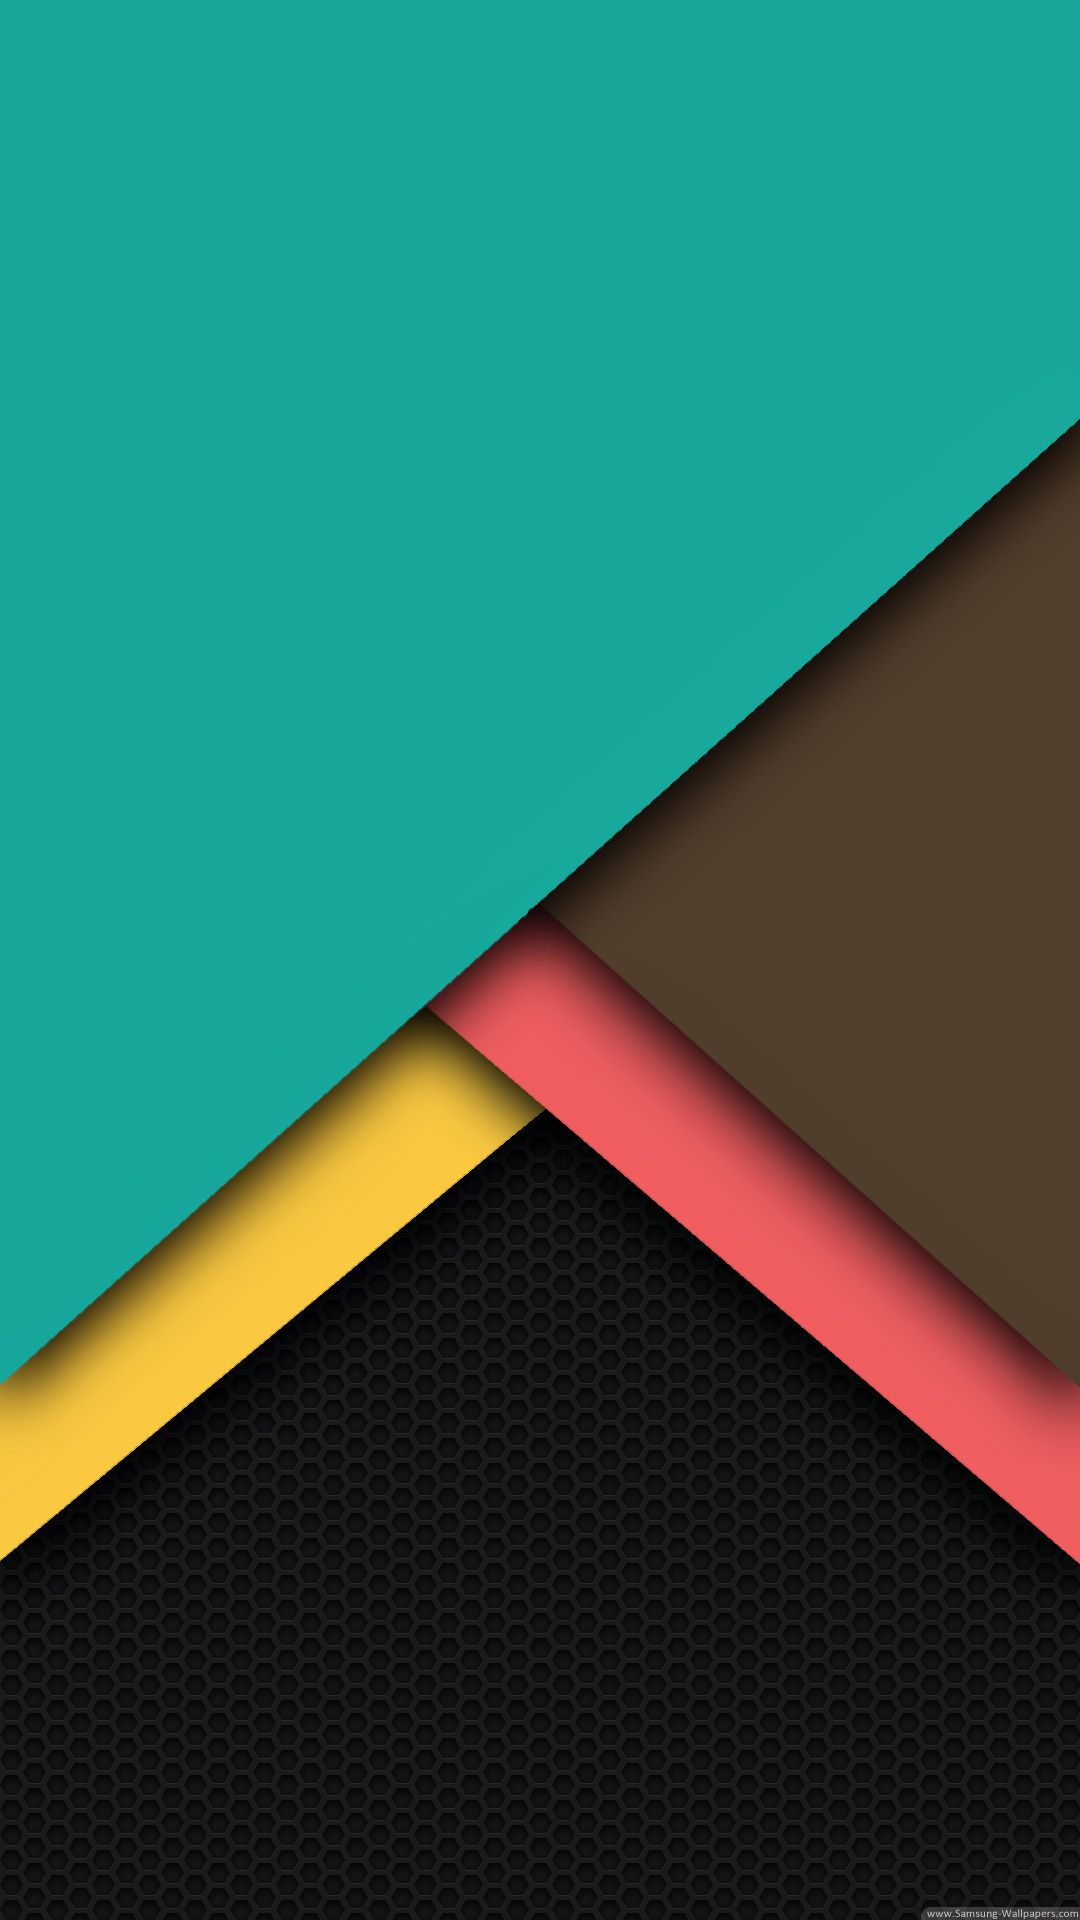 Nexus 6 - Samsung Wallpapers